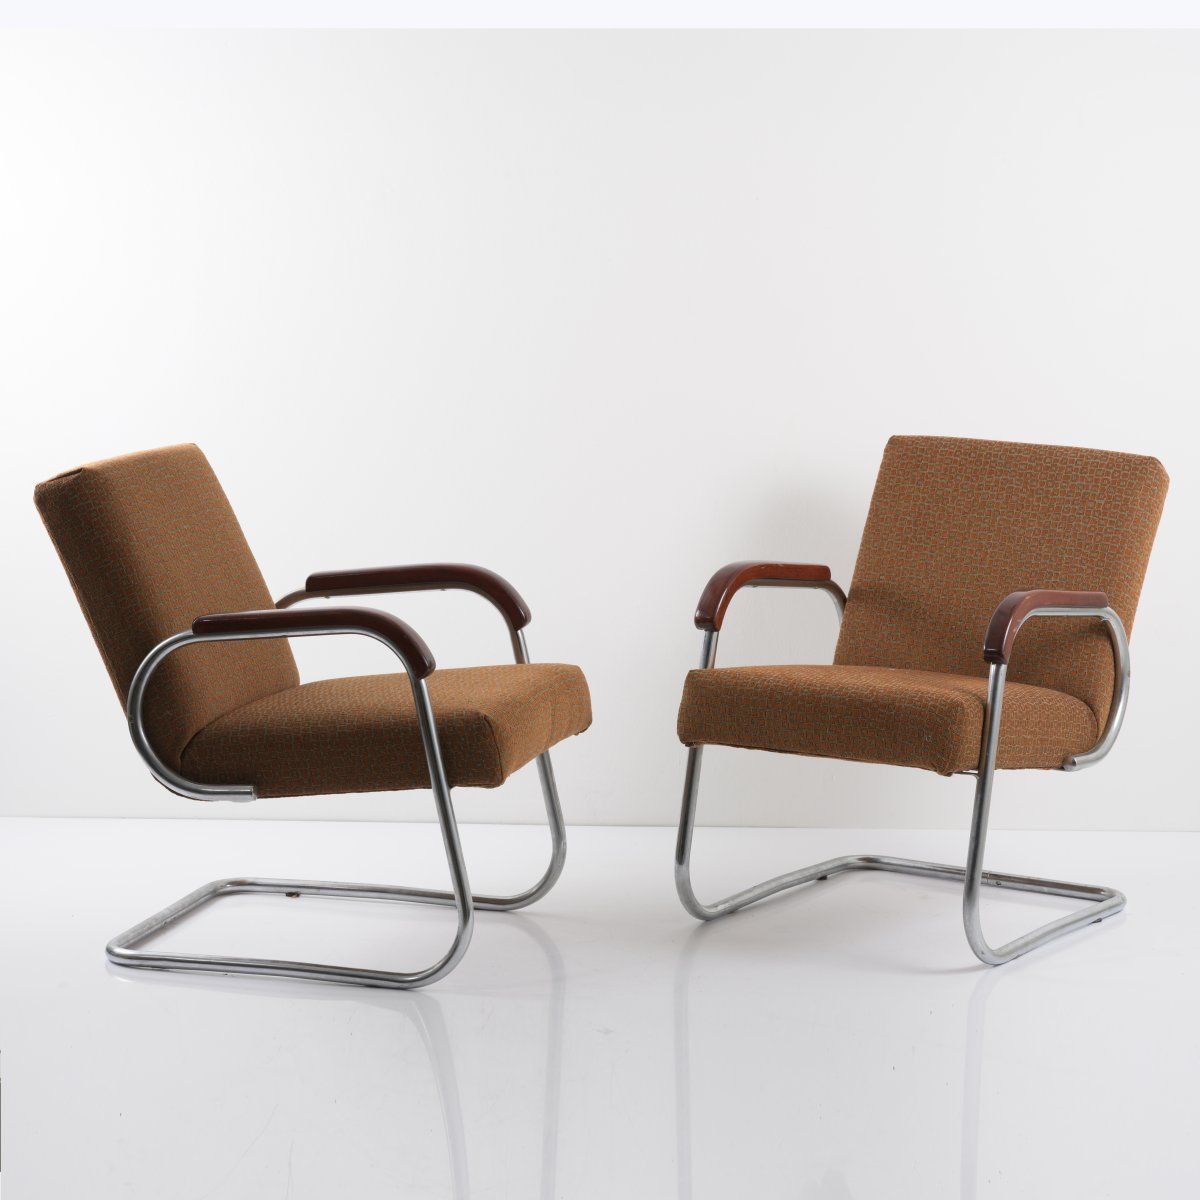 Null 大不列颠，2把扶手椅，约1933年，高76 x 56.5 x 75厘米；管径2.4厘米。管状钢，镀铬，木质扶手，染成深棕色；椅面用橙黄色的纺织物覆盖。&hellip;